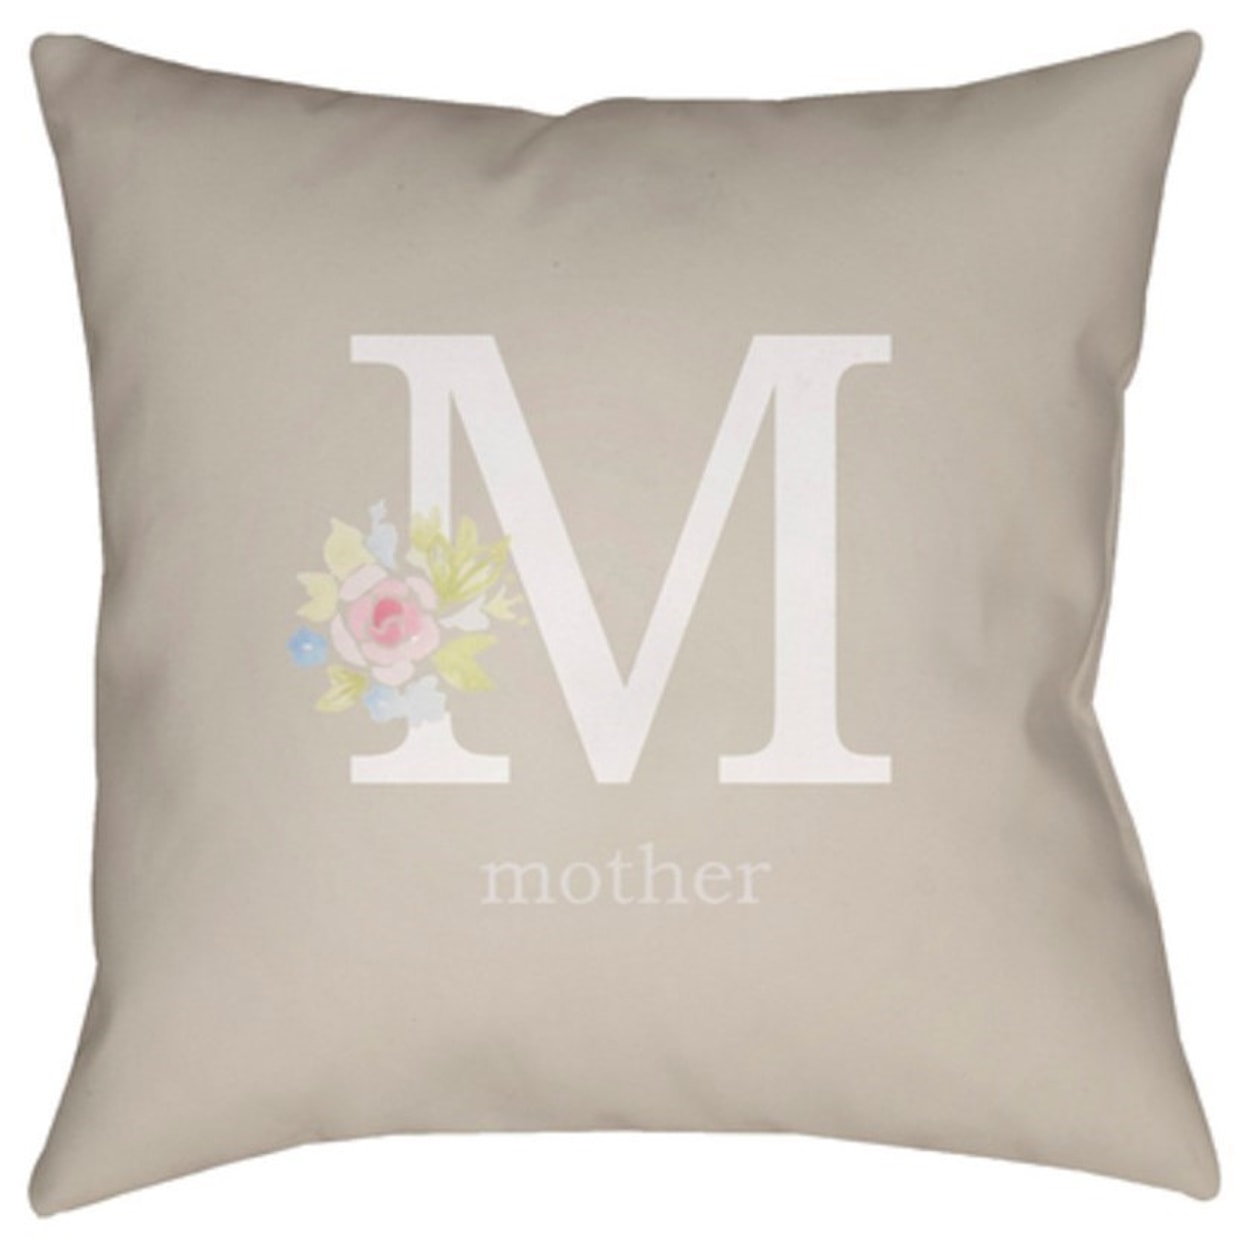 Surya Mother Pillow